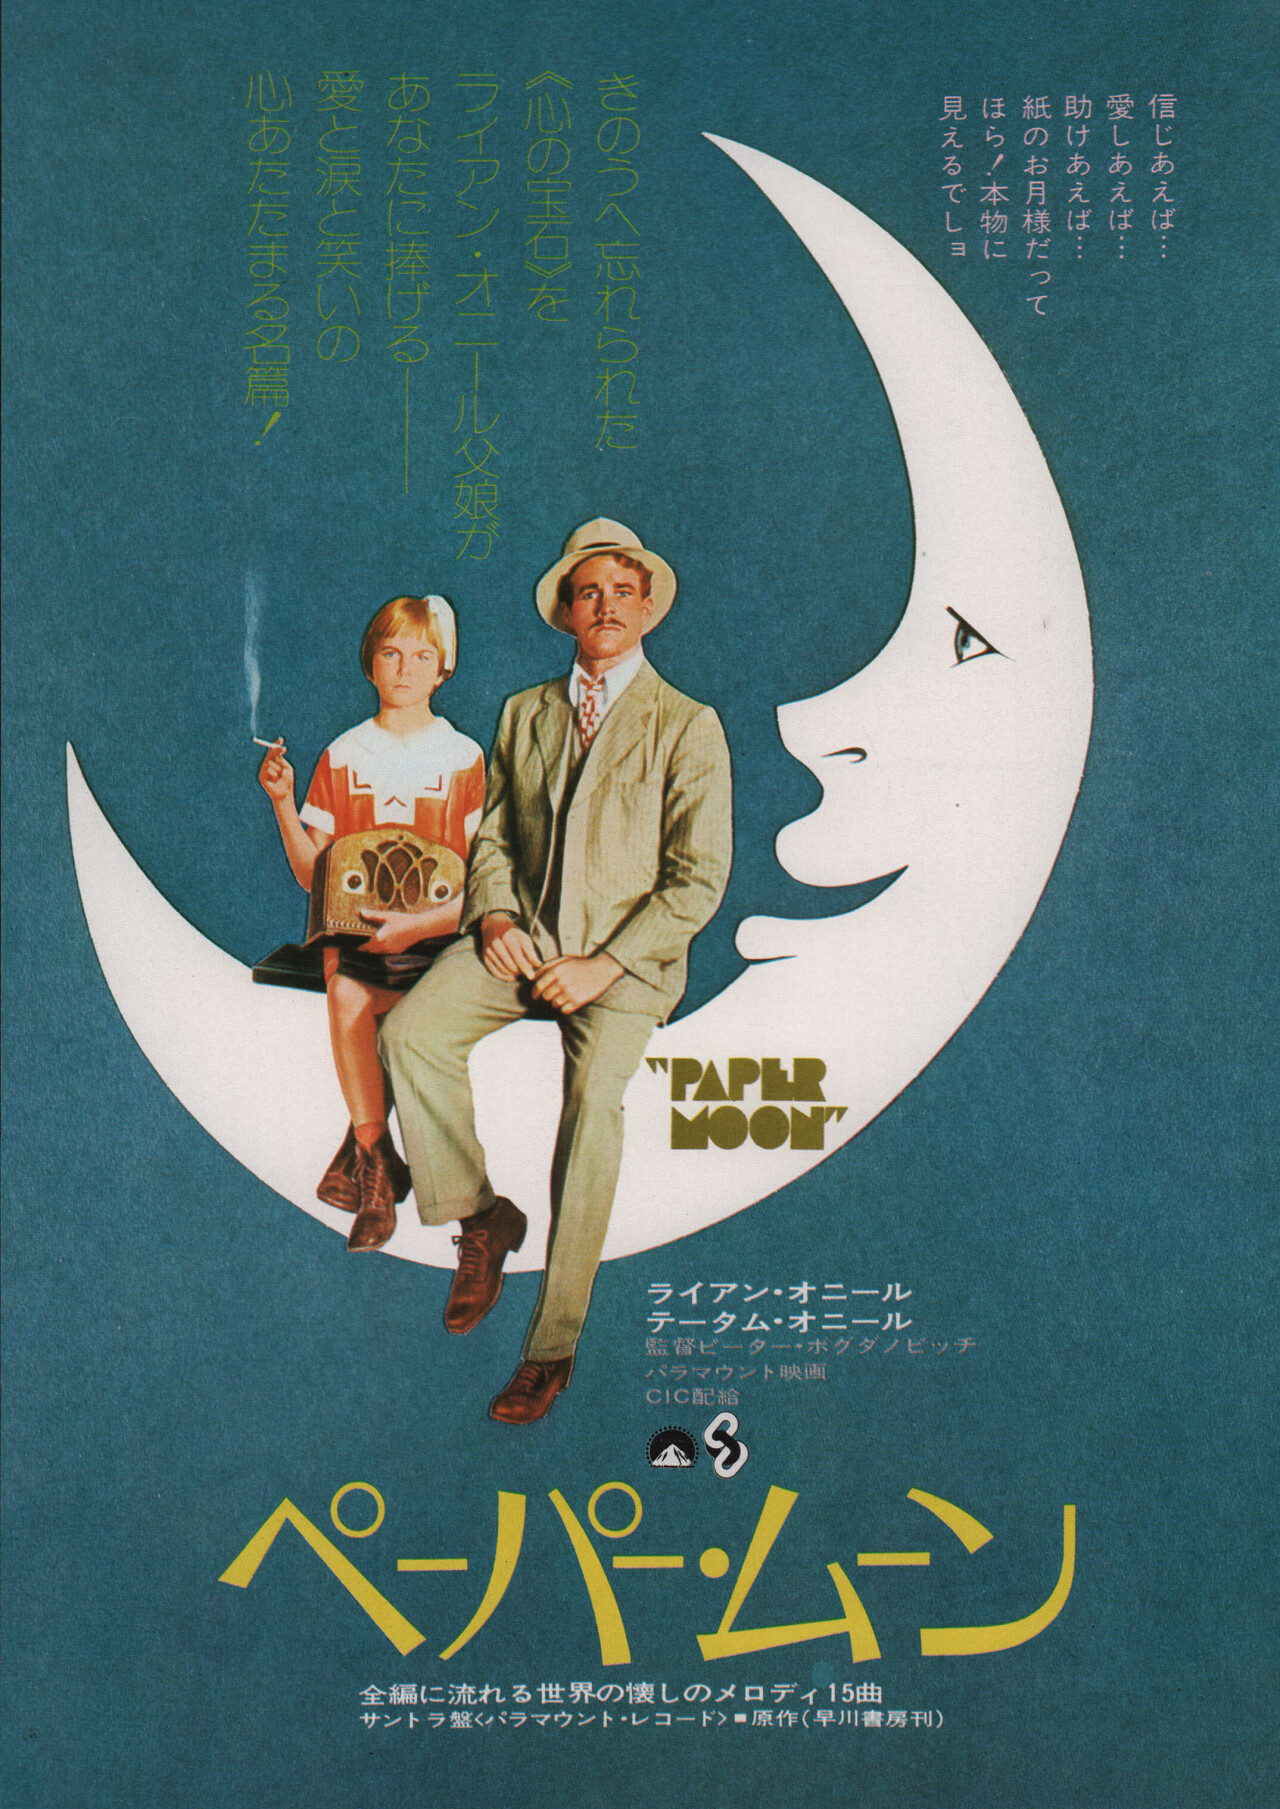 Бумажная луна (Paper Moon, 1973), режиссёр Петр Богданович, японский постер к фильму (графический дизайн, 1974 год)